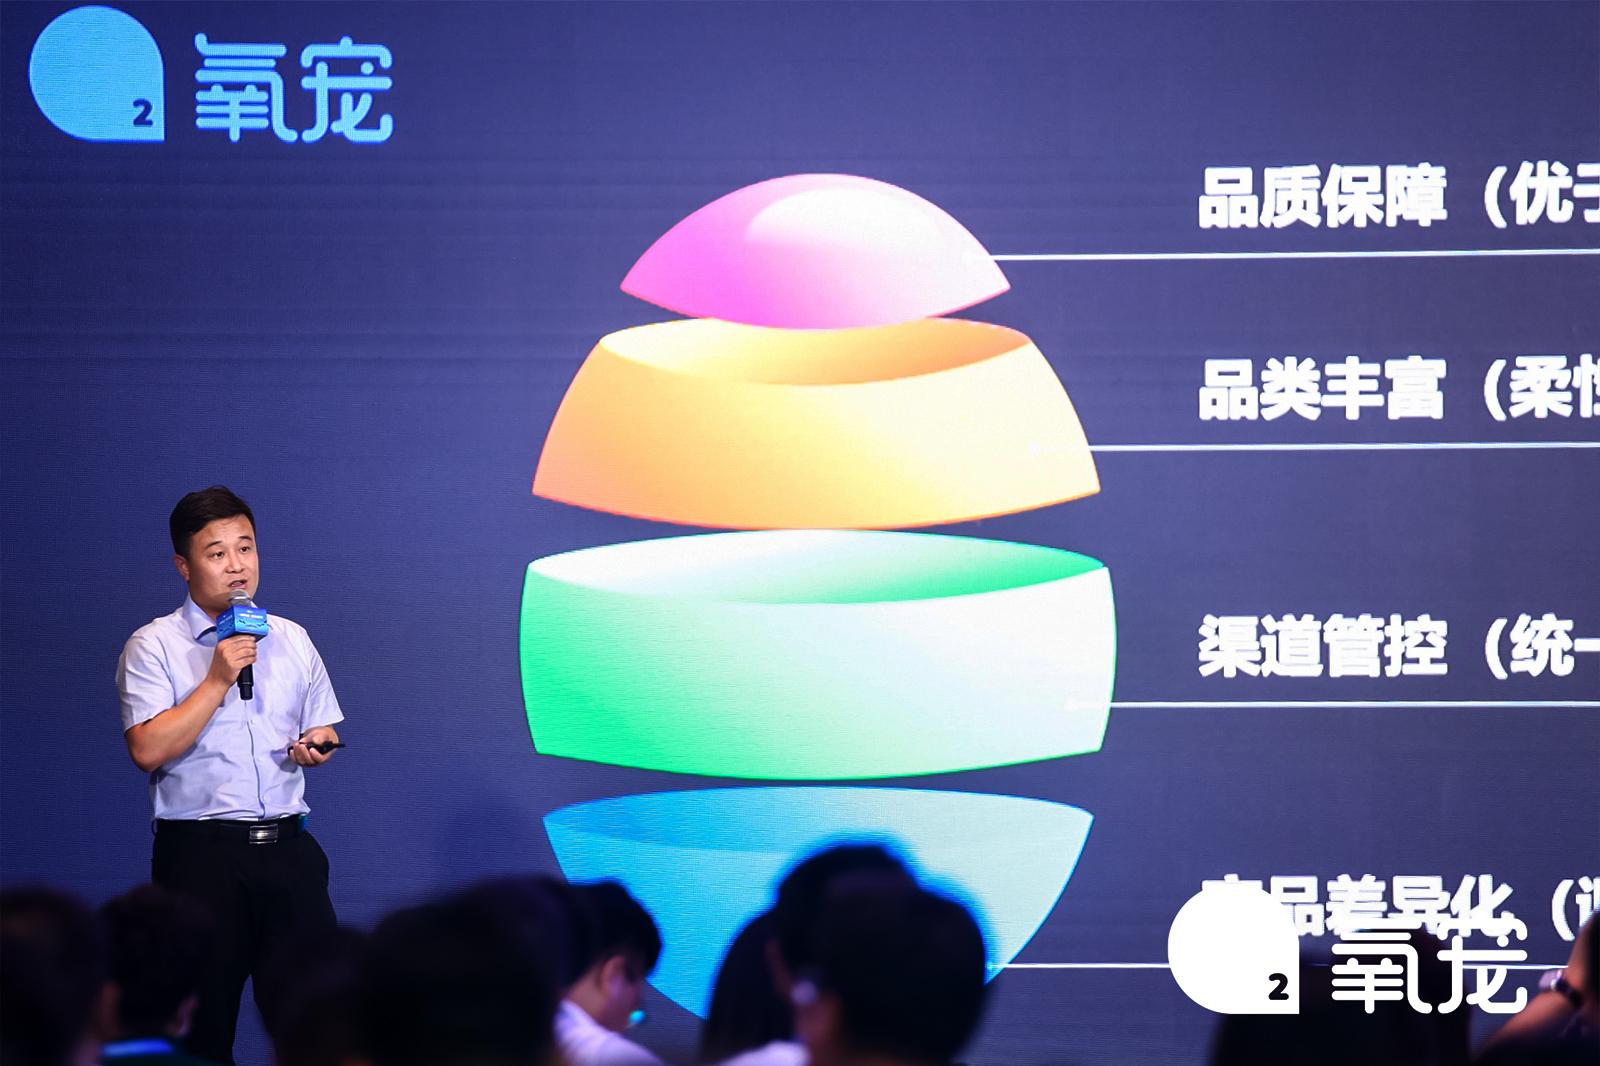 江苏吉家宠物用品有限公司联合创始人刘磊做演讲